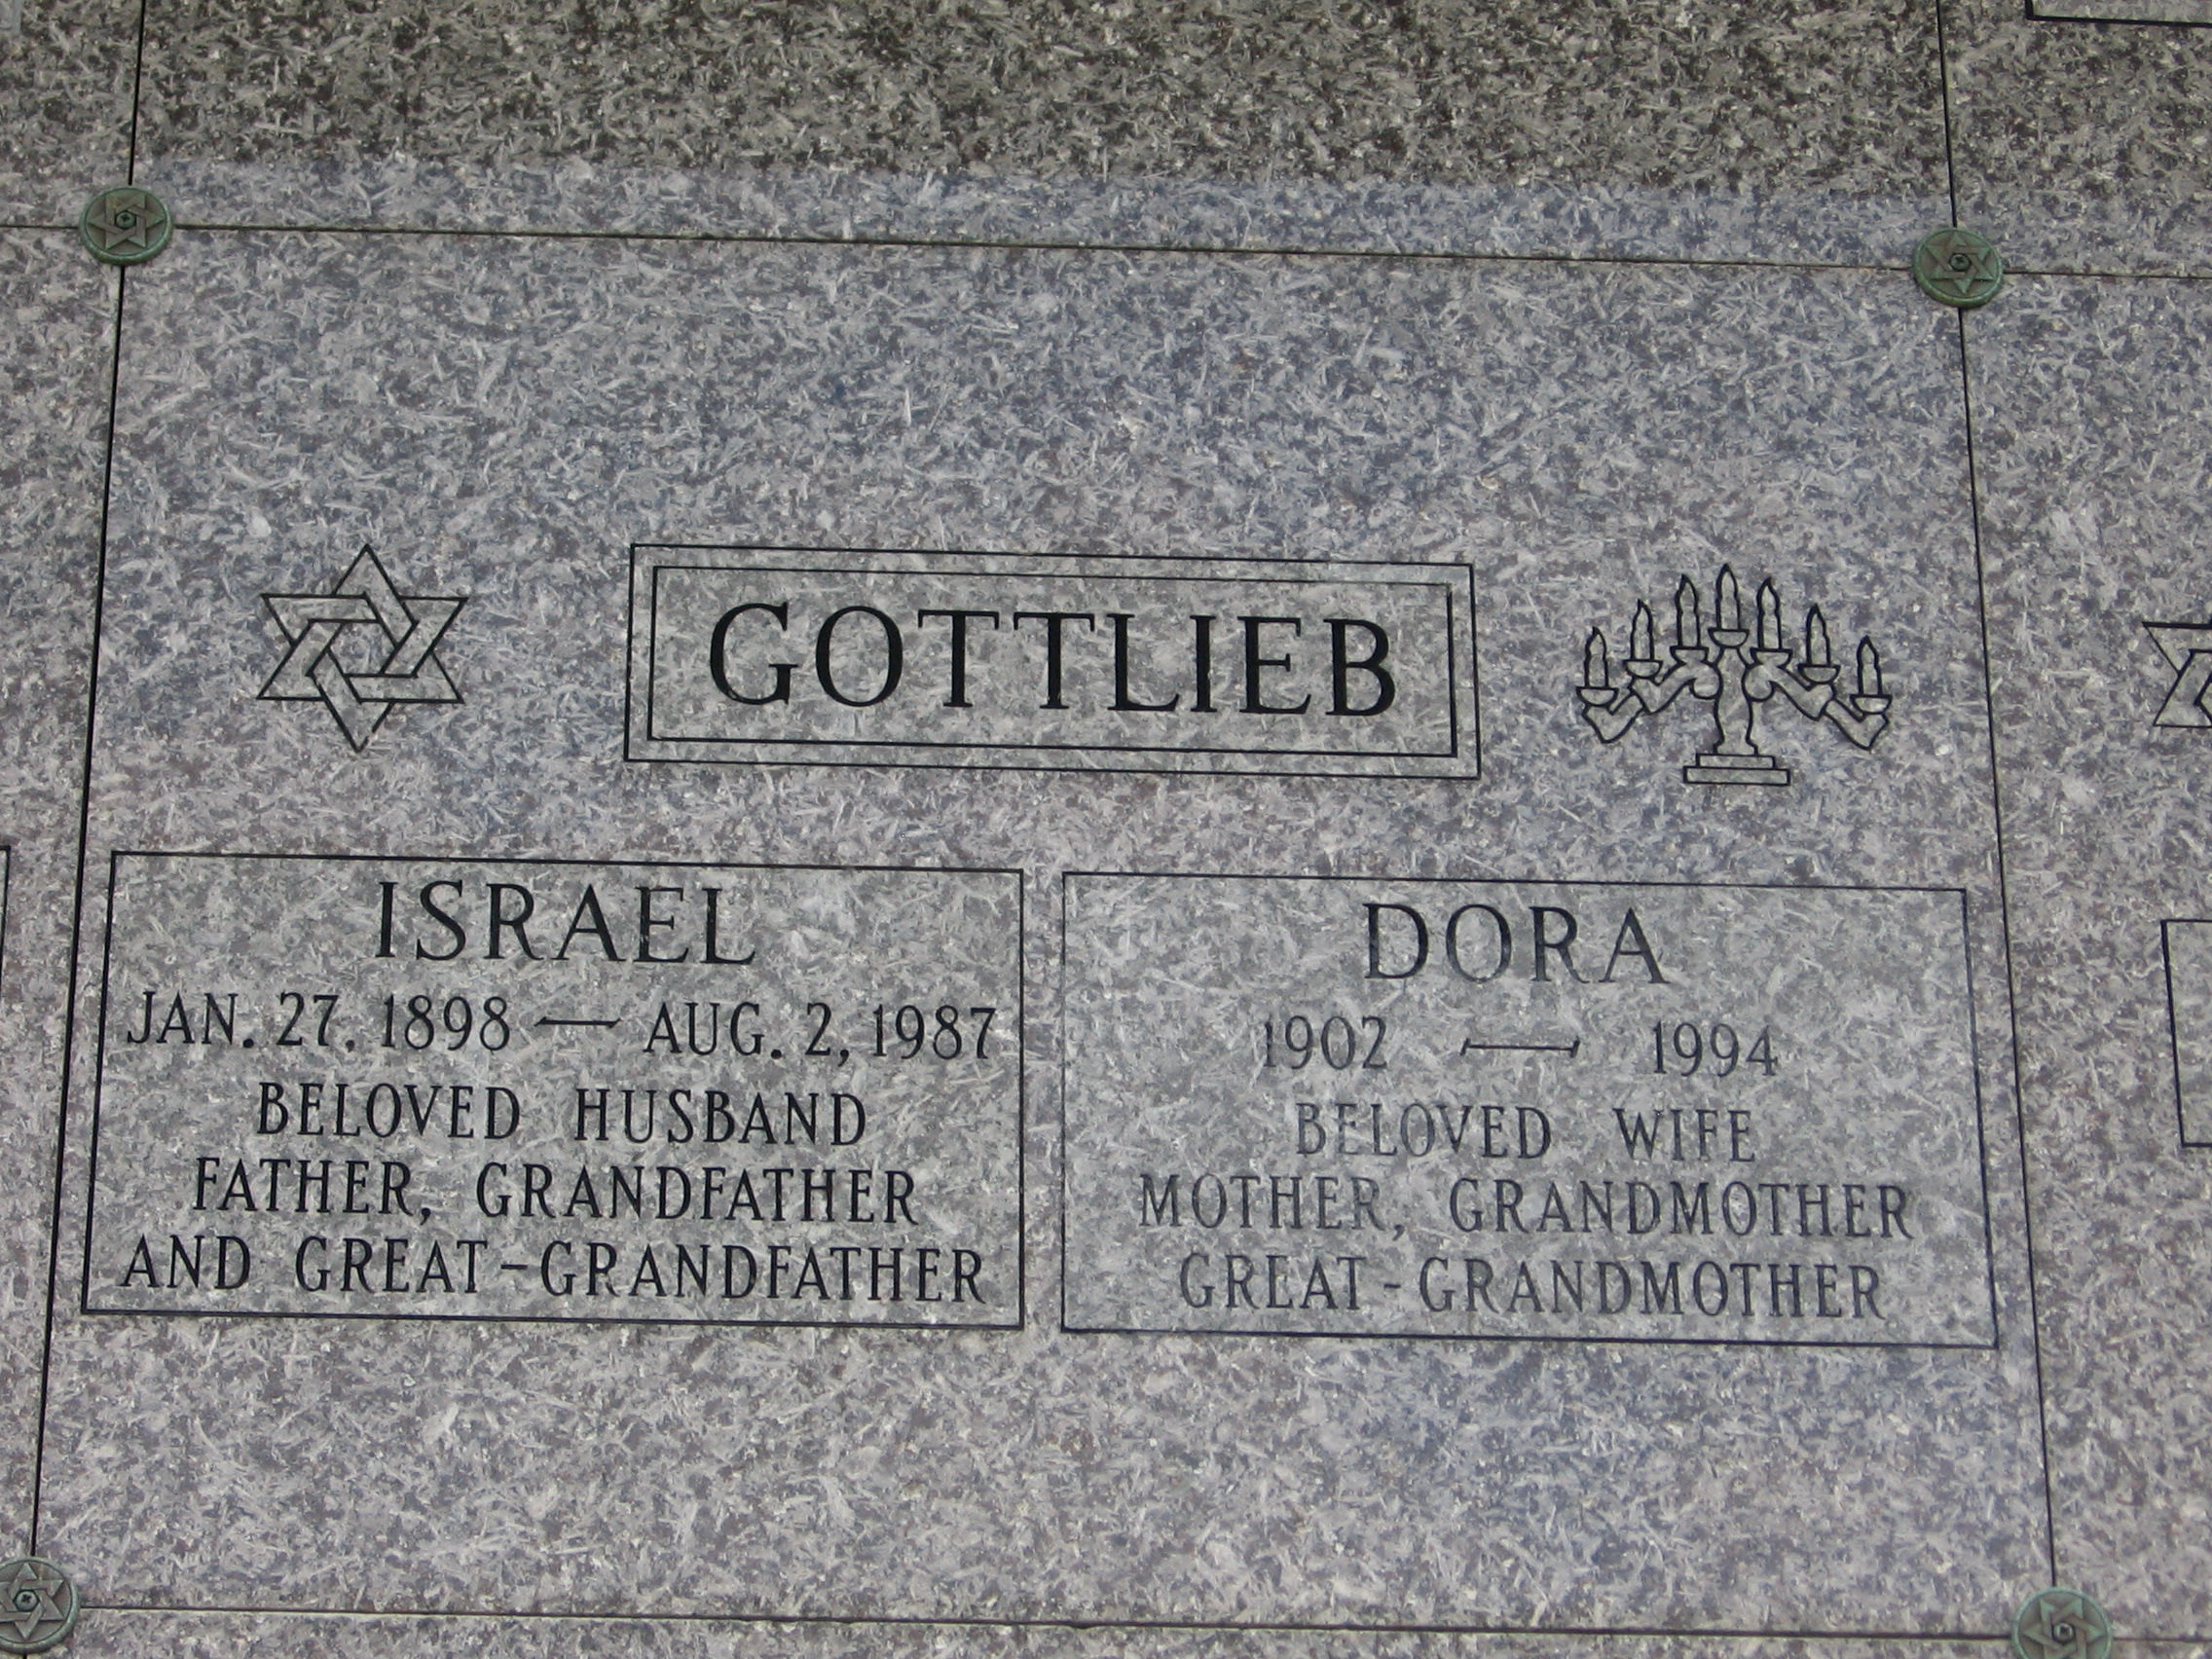 Israel Gottlieb